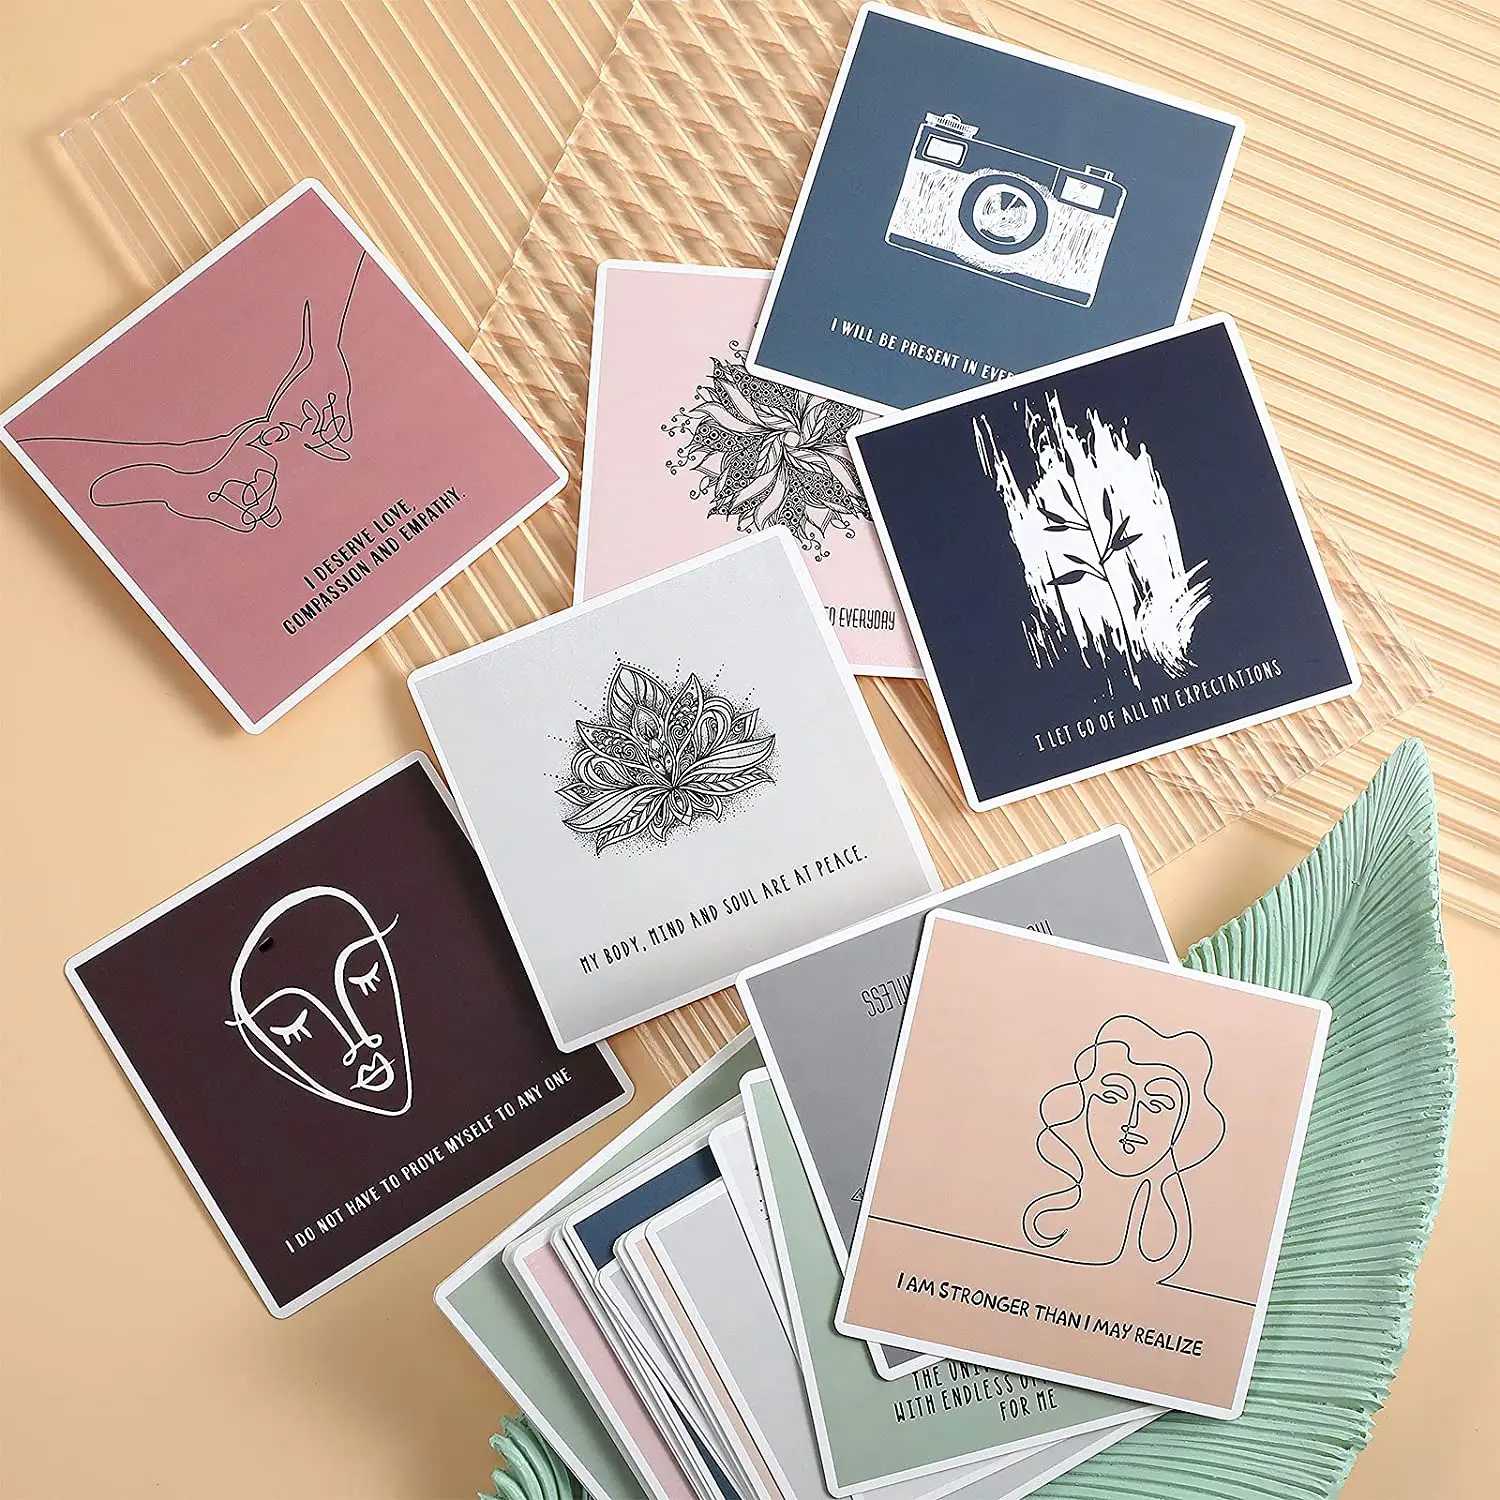 カスタム印刷された瞑想精神的健康マインドフルネス心に強く訴える引用肯定的な動機付けの印刷肯定カード